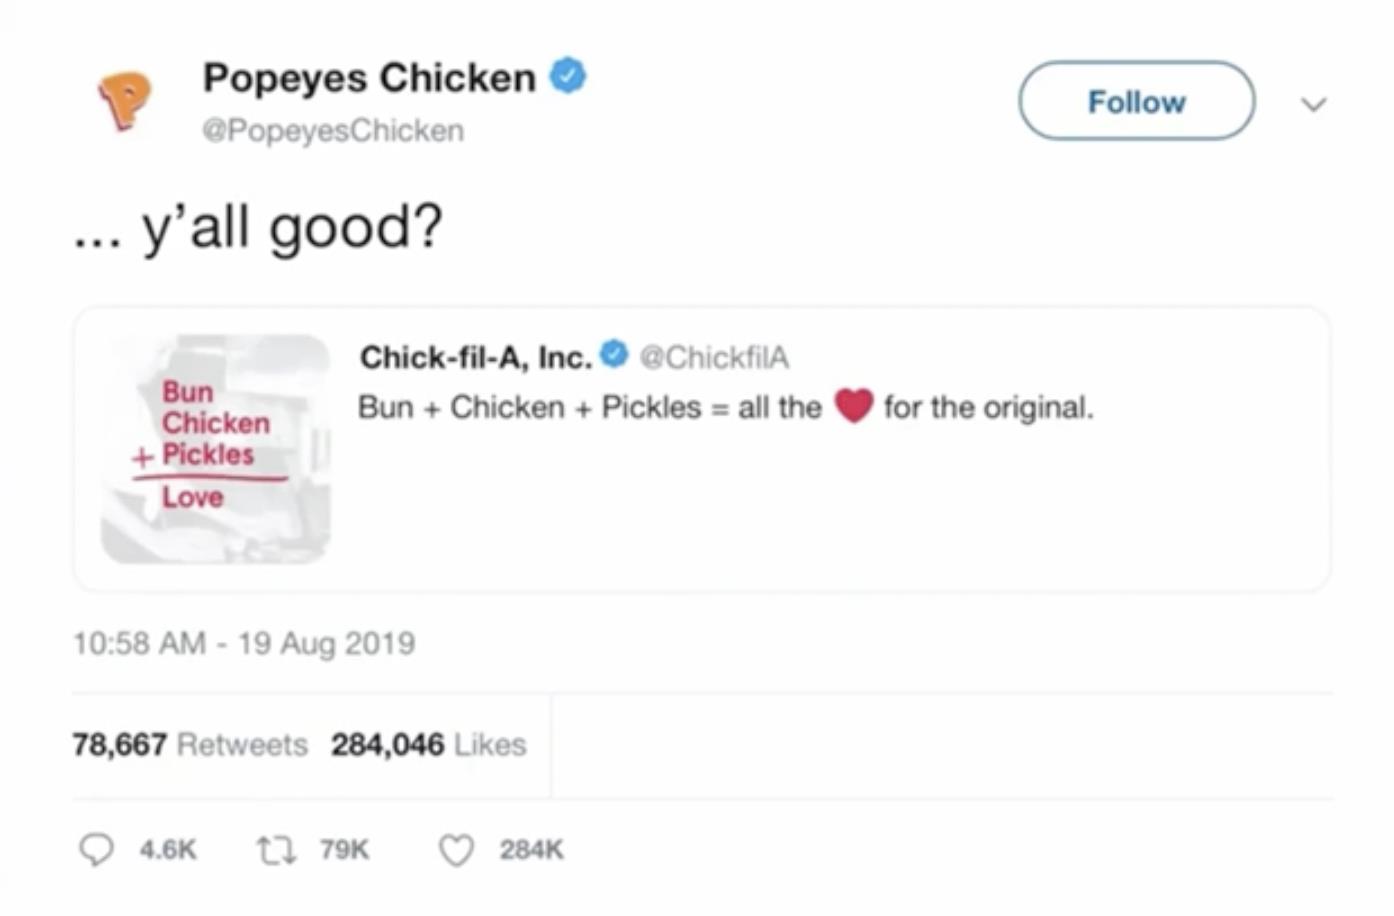 Popeyes - Chicken Sandwich Wars (Case Study)